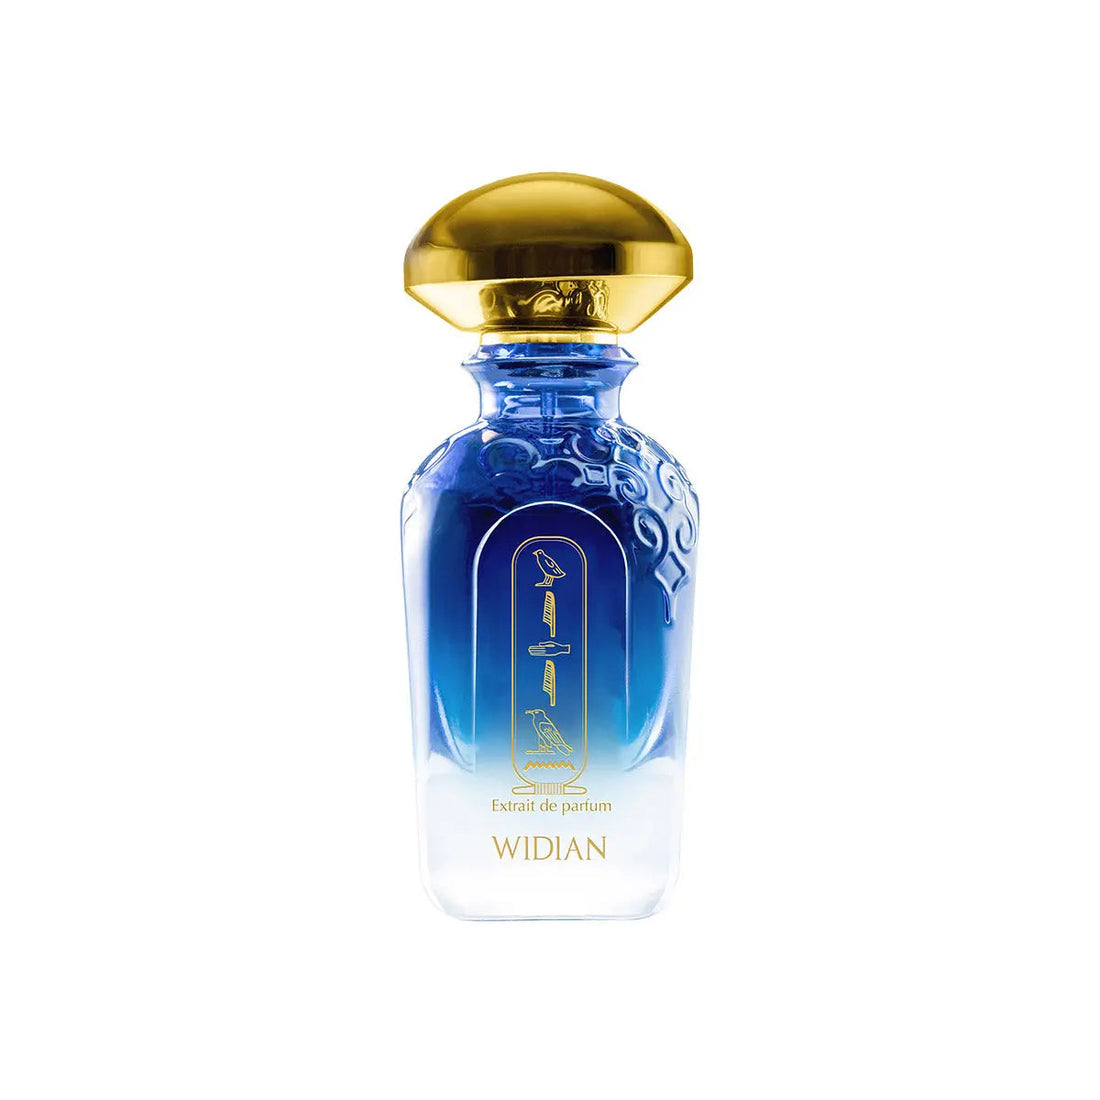 Extrait de parfum Assouan Widian - 50 ml